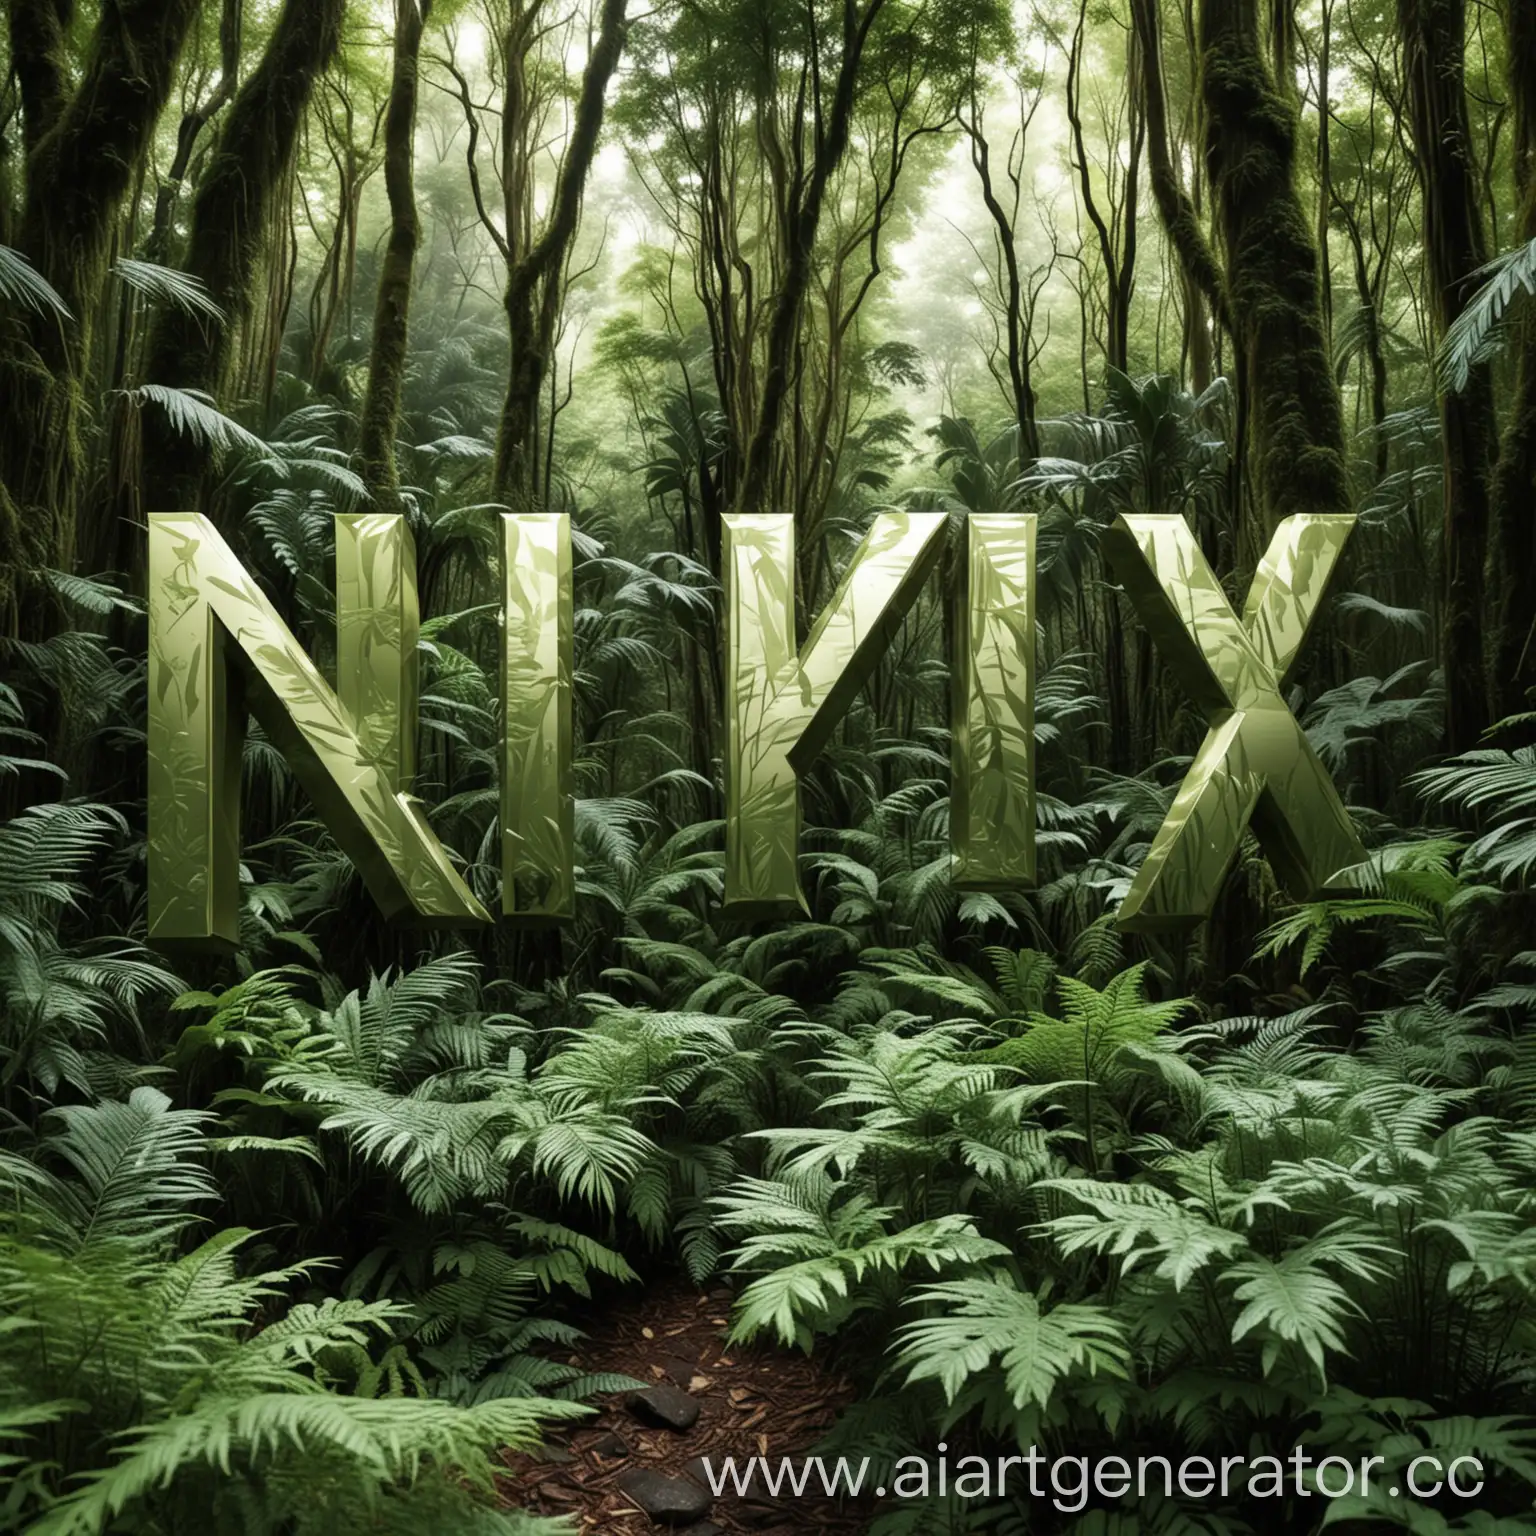  Создайте изображение с текстом "NzX" в красивом металлическом цвете на переднем плане. Фон должен состоять из густых джунглей с множеством зеленых листьев и высоких деревьев, создающих атмосферу дикой природы. Цвет текста должен быть ярко выделен на фоне, чтобы привлечь 
внимание.